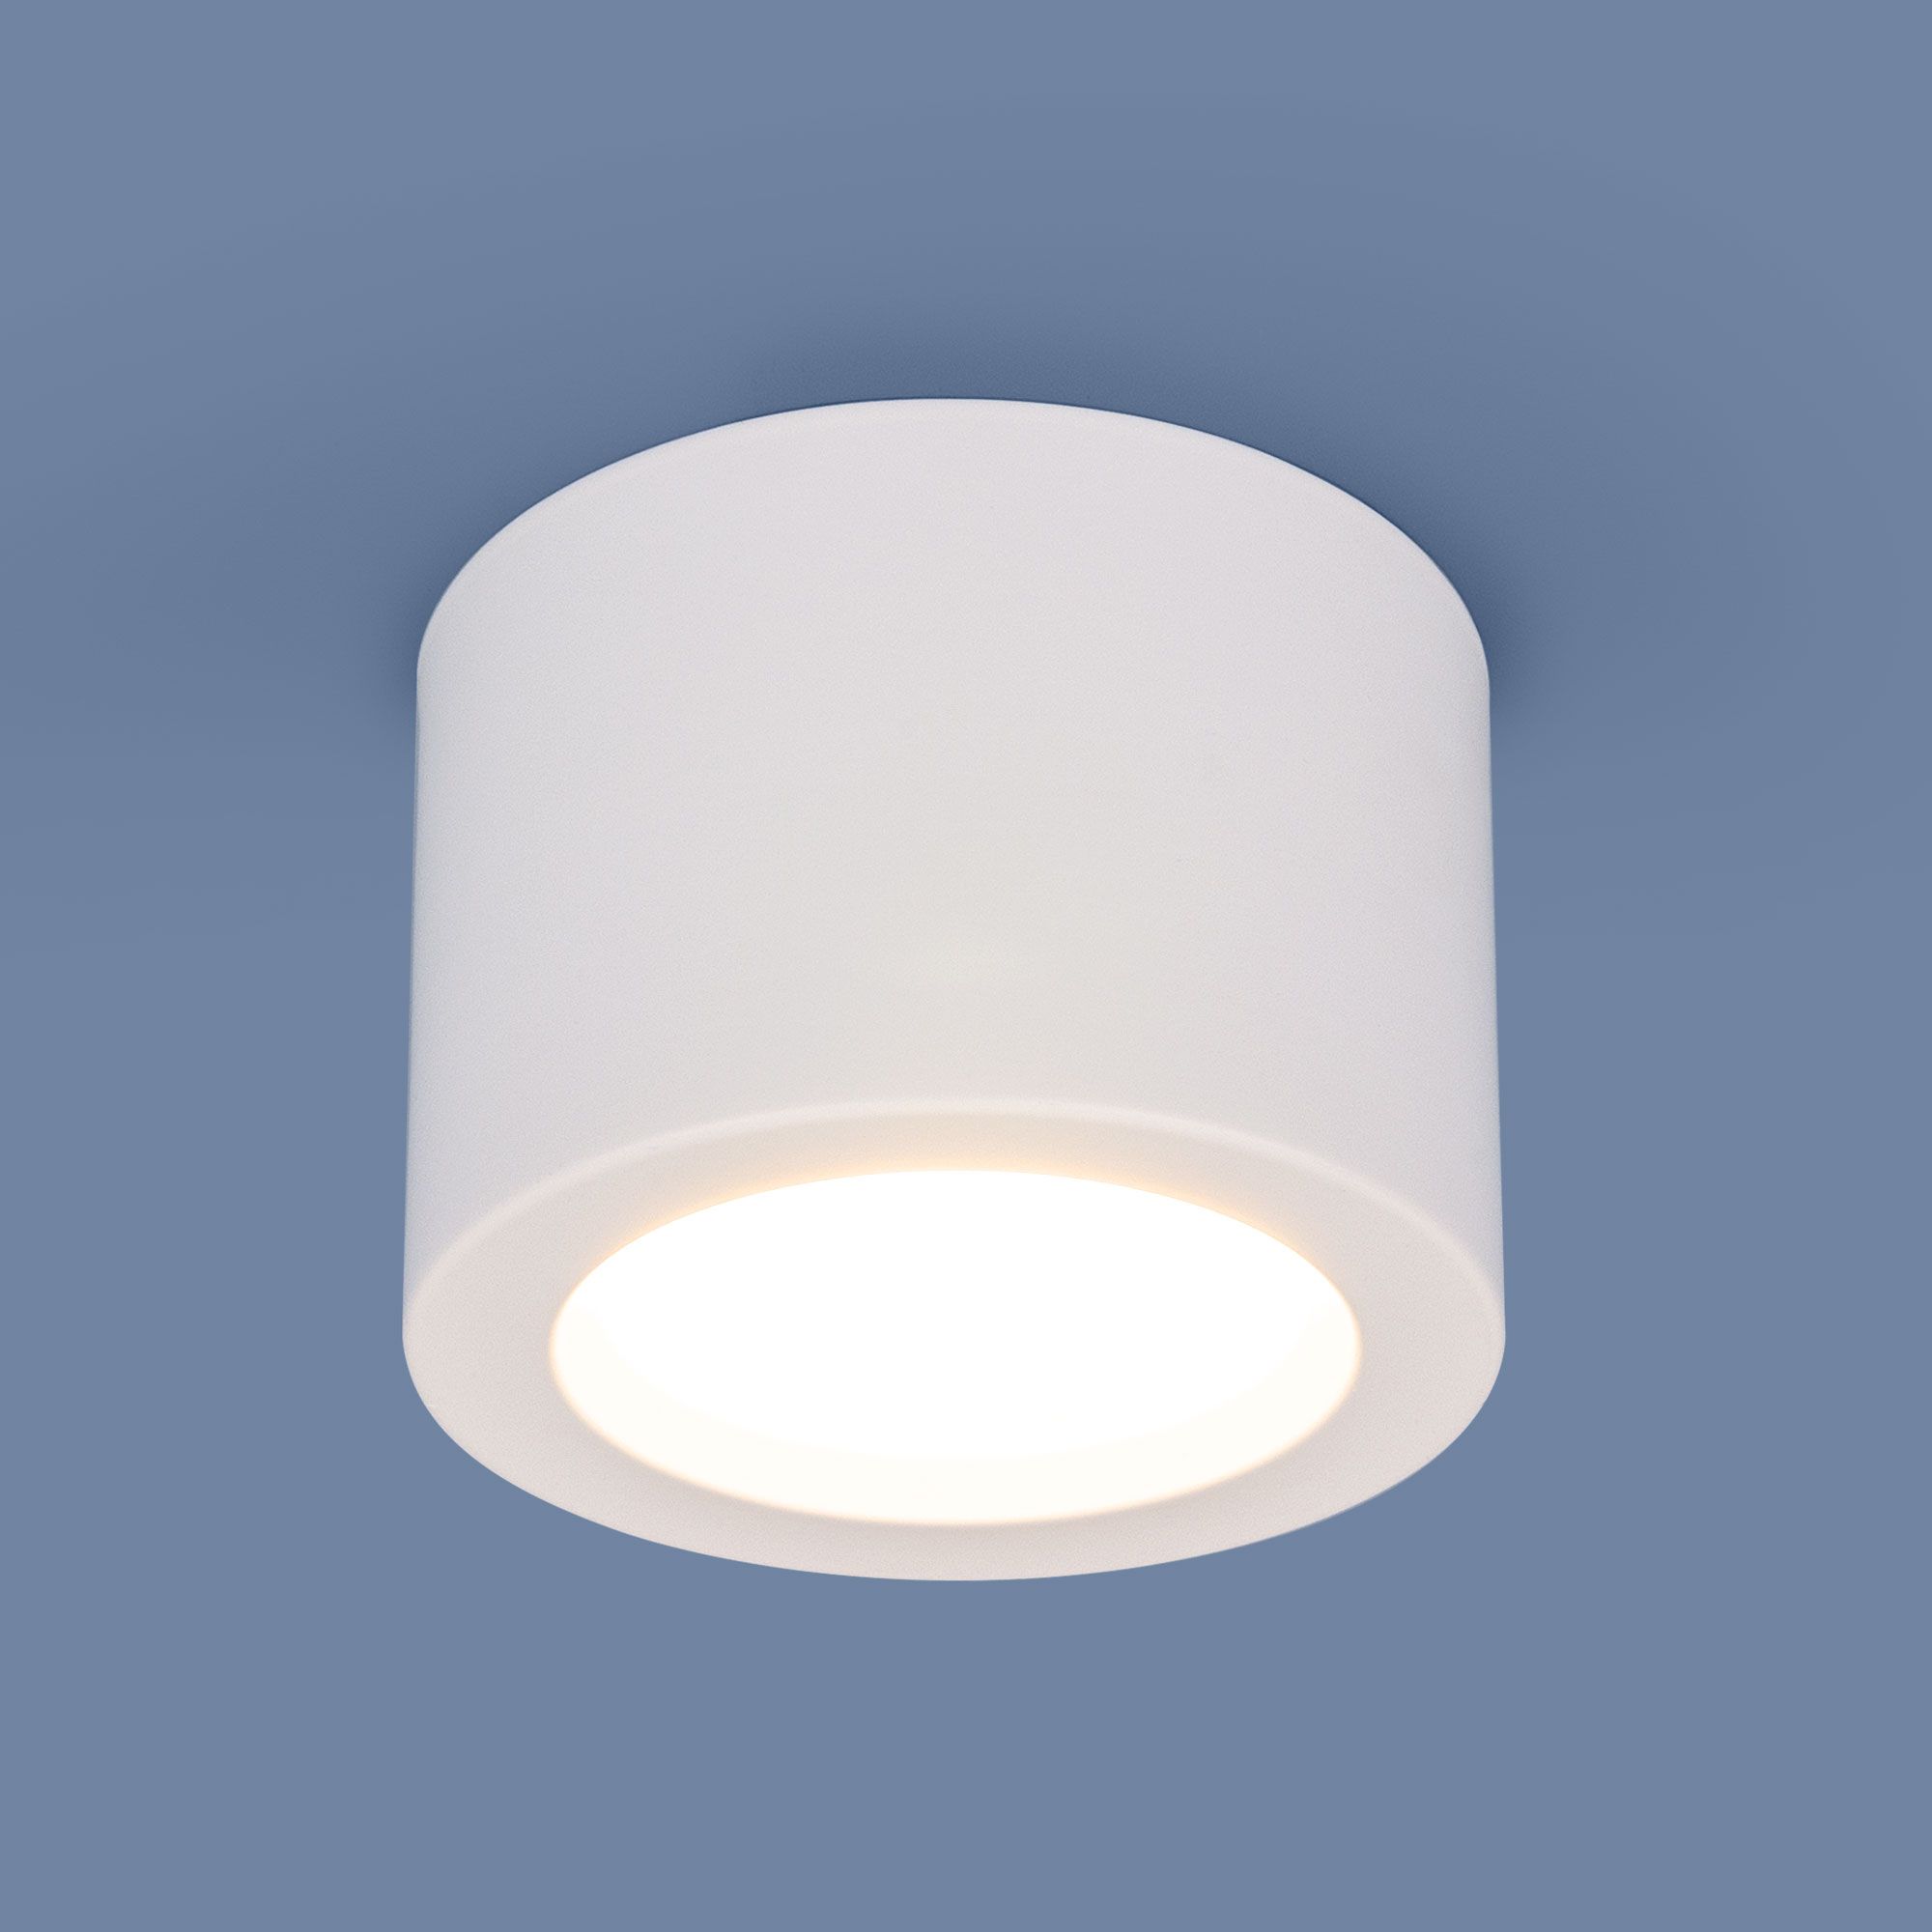 Накладной потолочный  светодиодный светильник DLR026 6W 4200K белый матовый. Фото 2